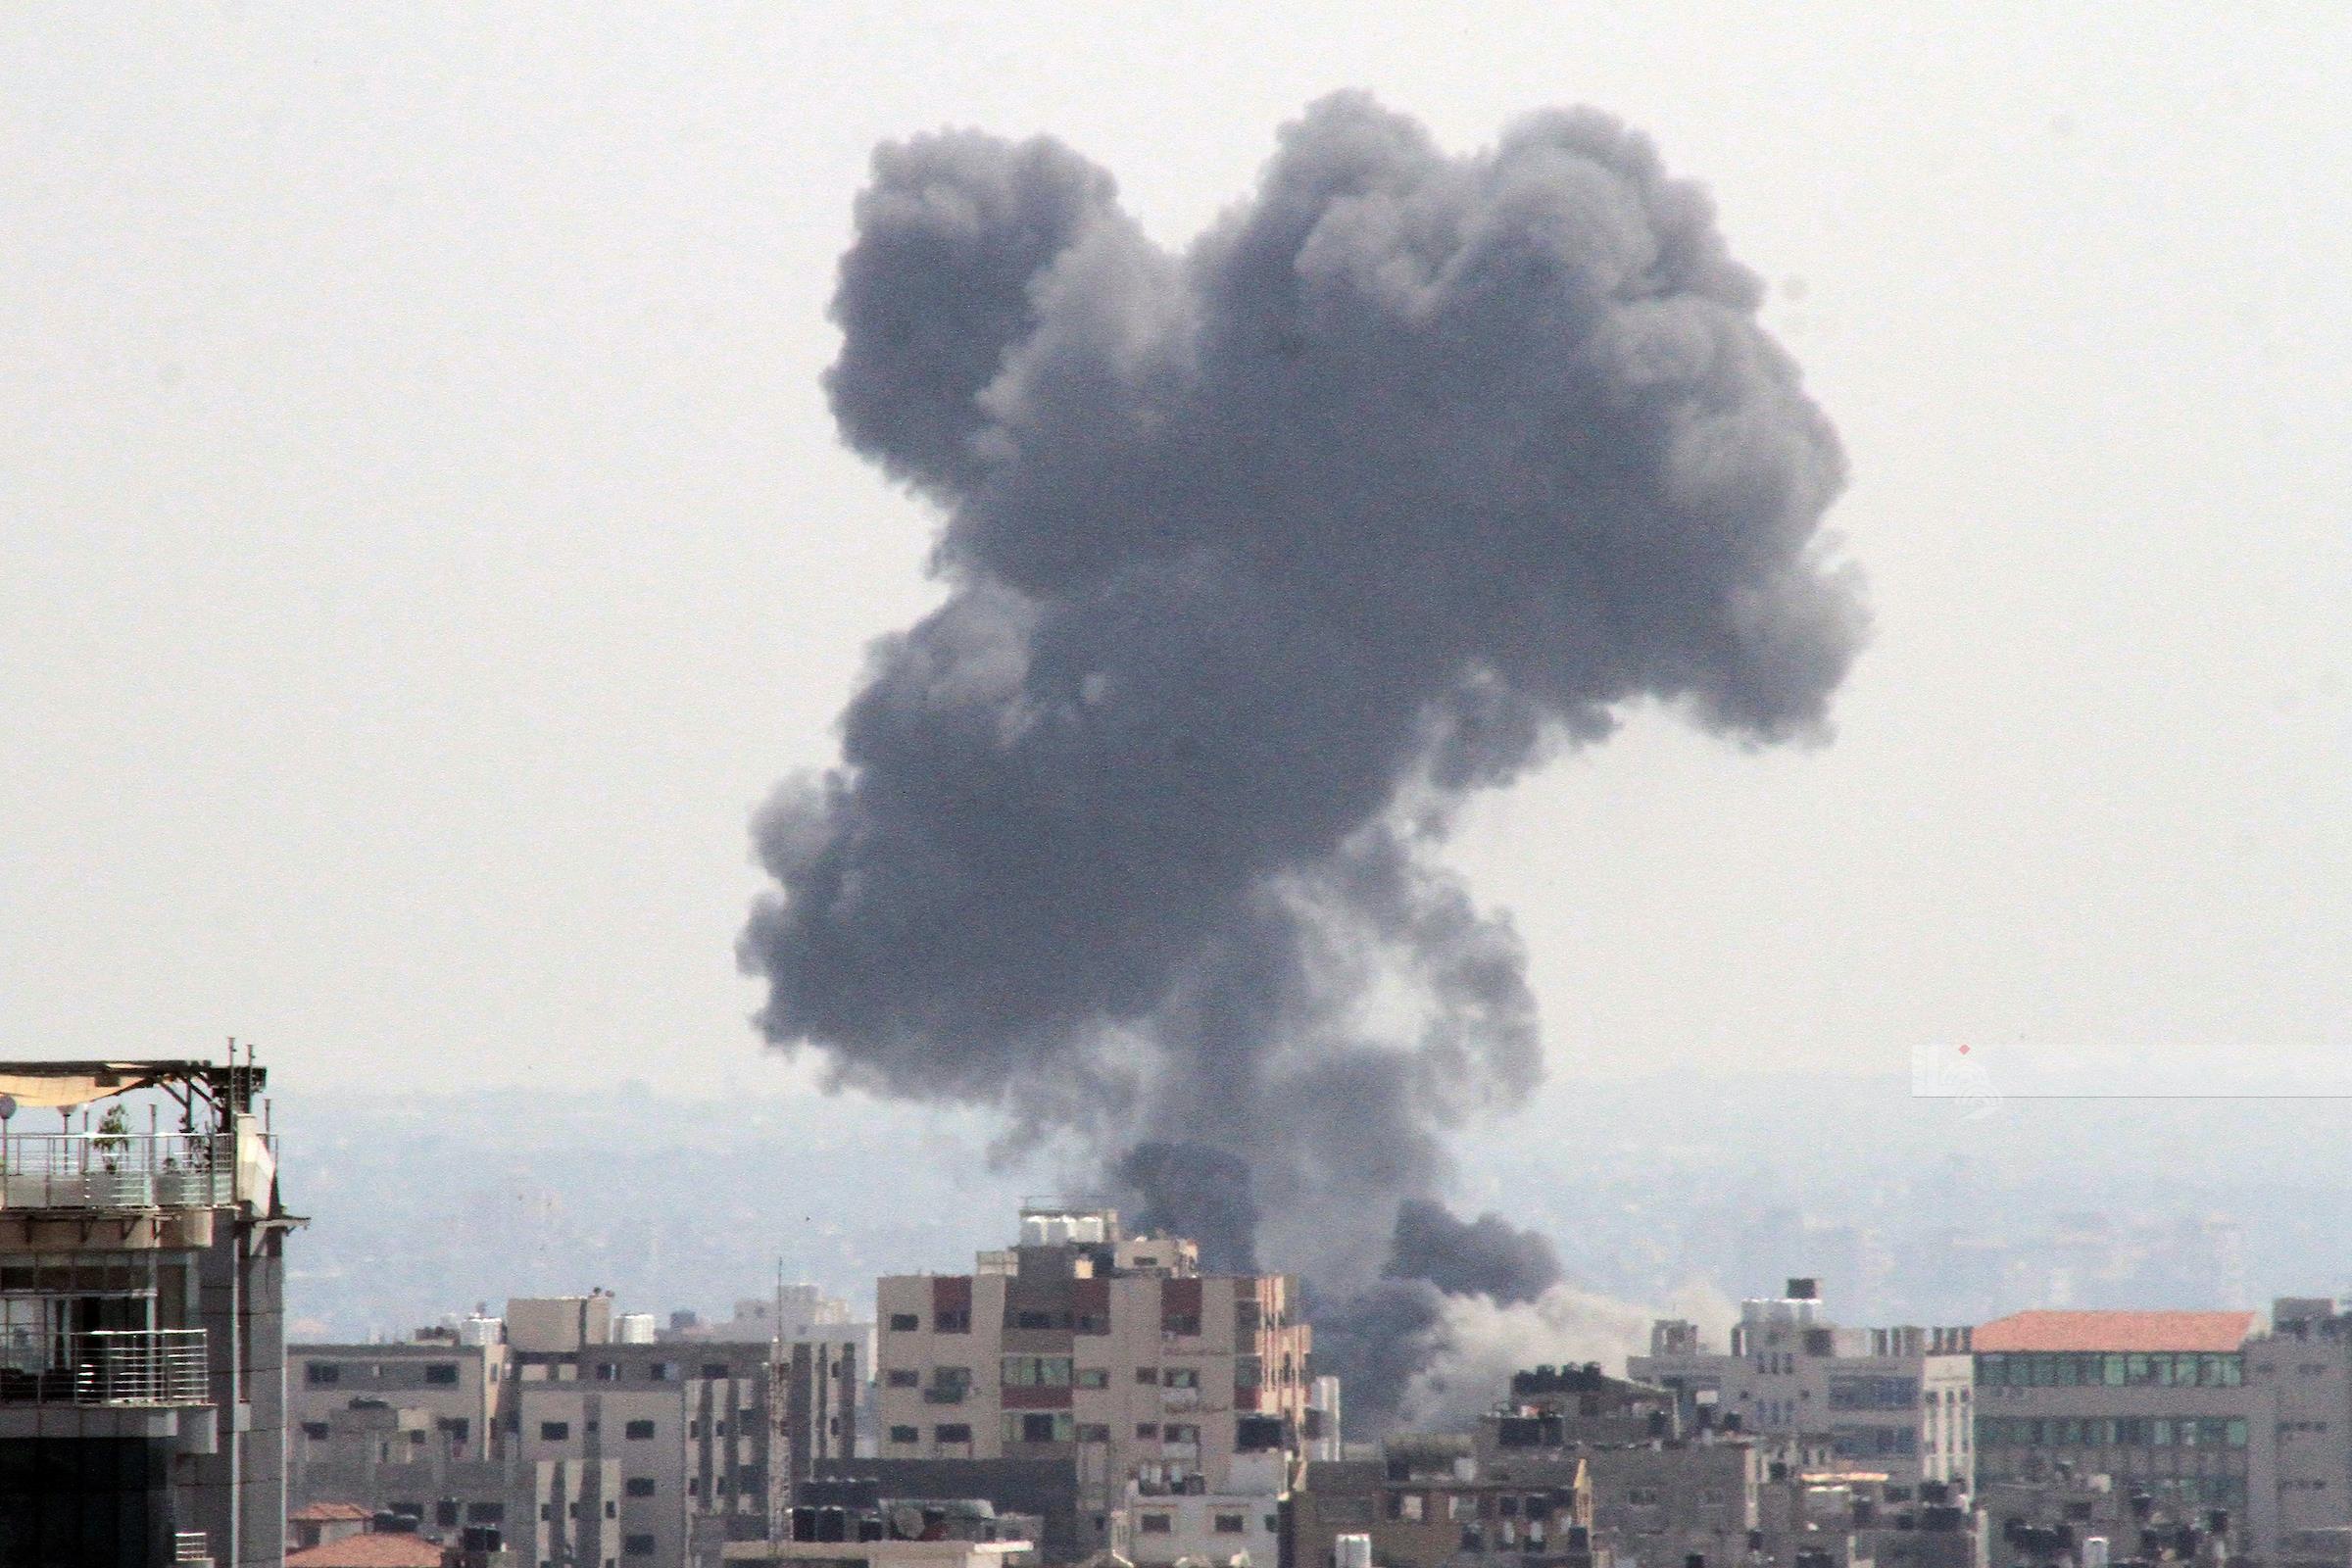 العدو يستأنف غاراته على قطاع غزة فجر اليوم الجمعة، واعداد الضحايا ترتفع الى 31 شهيداً ومئة جريح، والأنظار تتجه الى مصر